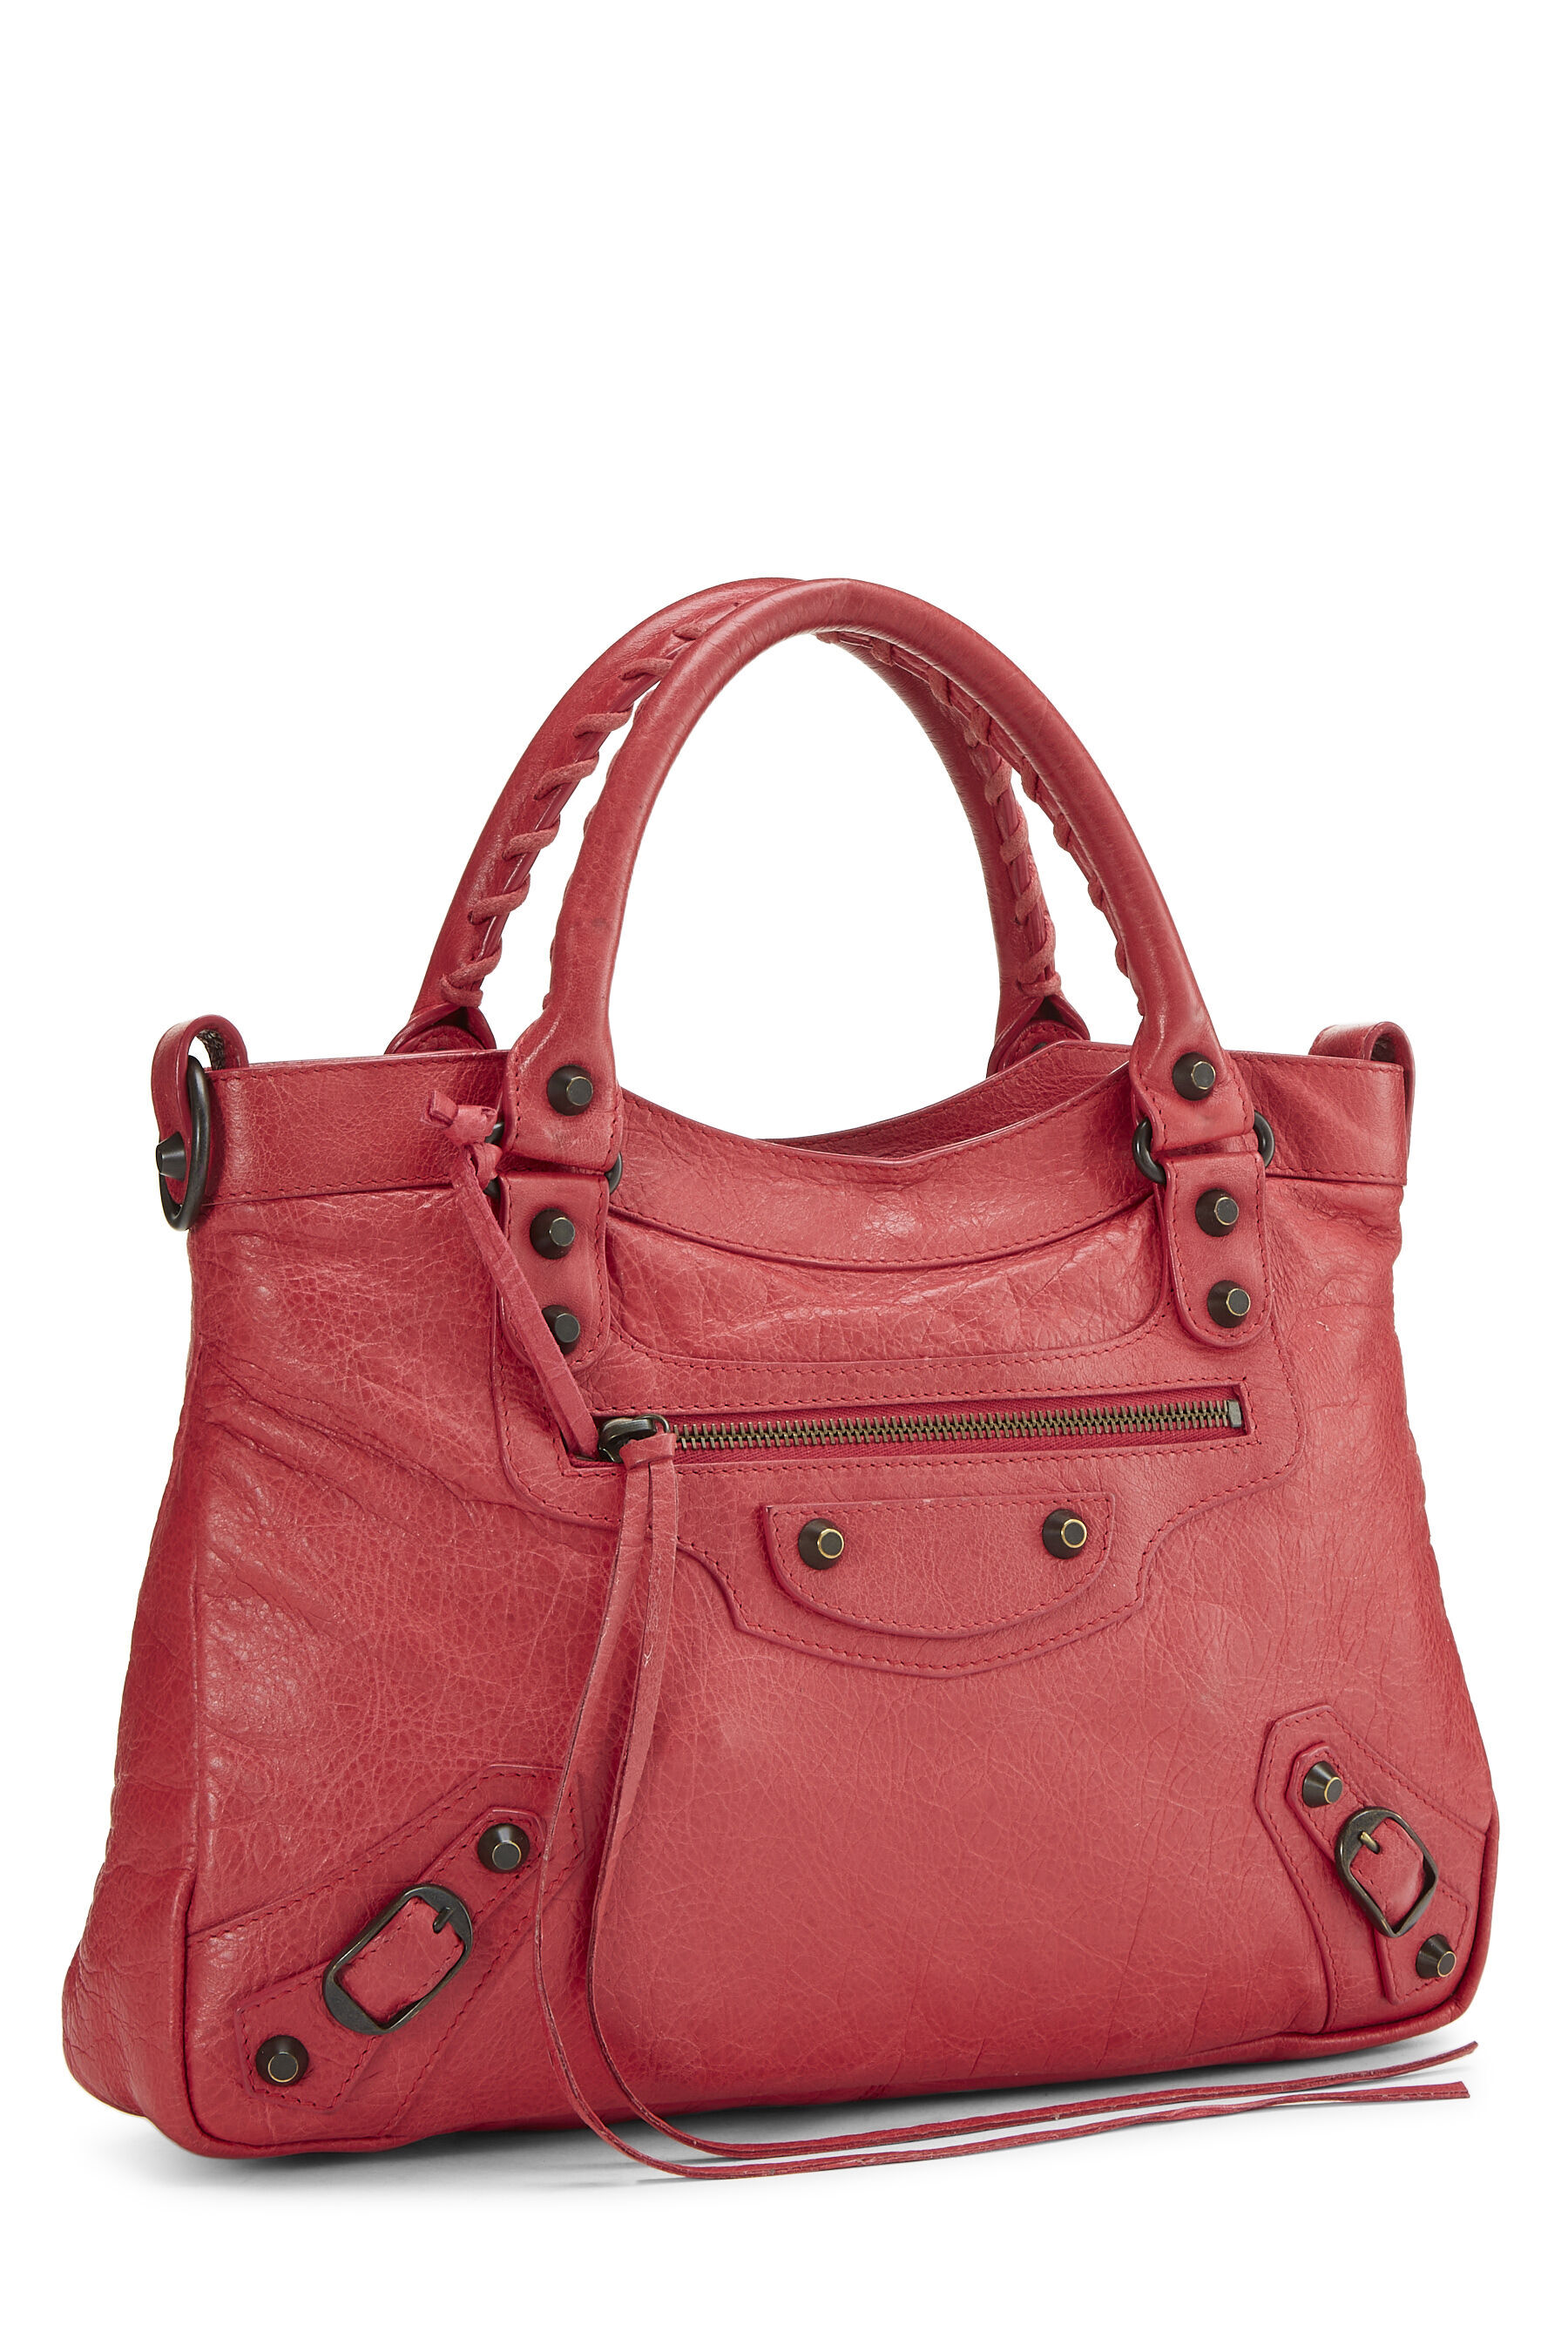 Balenciaga Town Bags  Handbags for Women  Authenticity Guaranteed  eBay